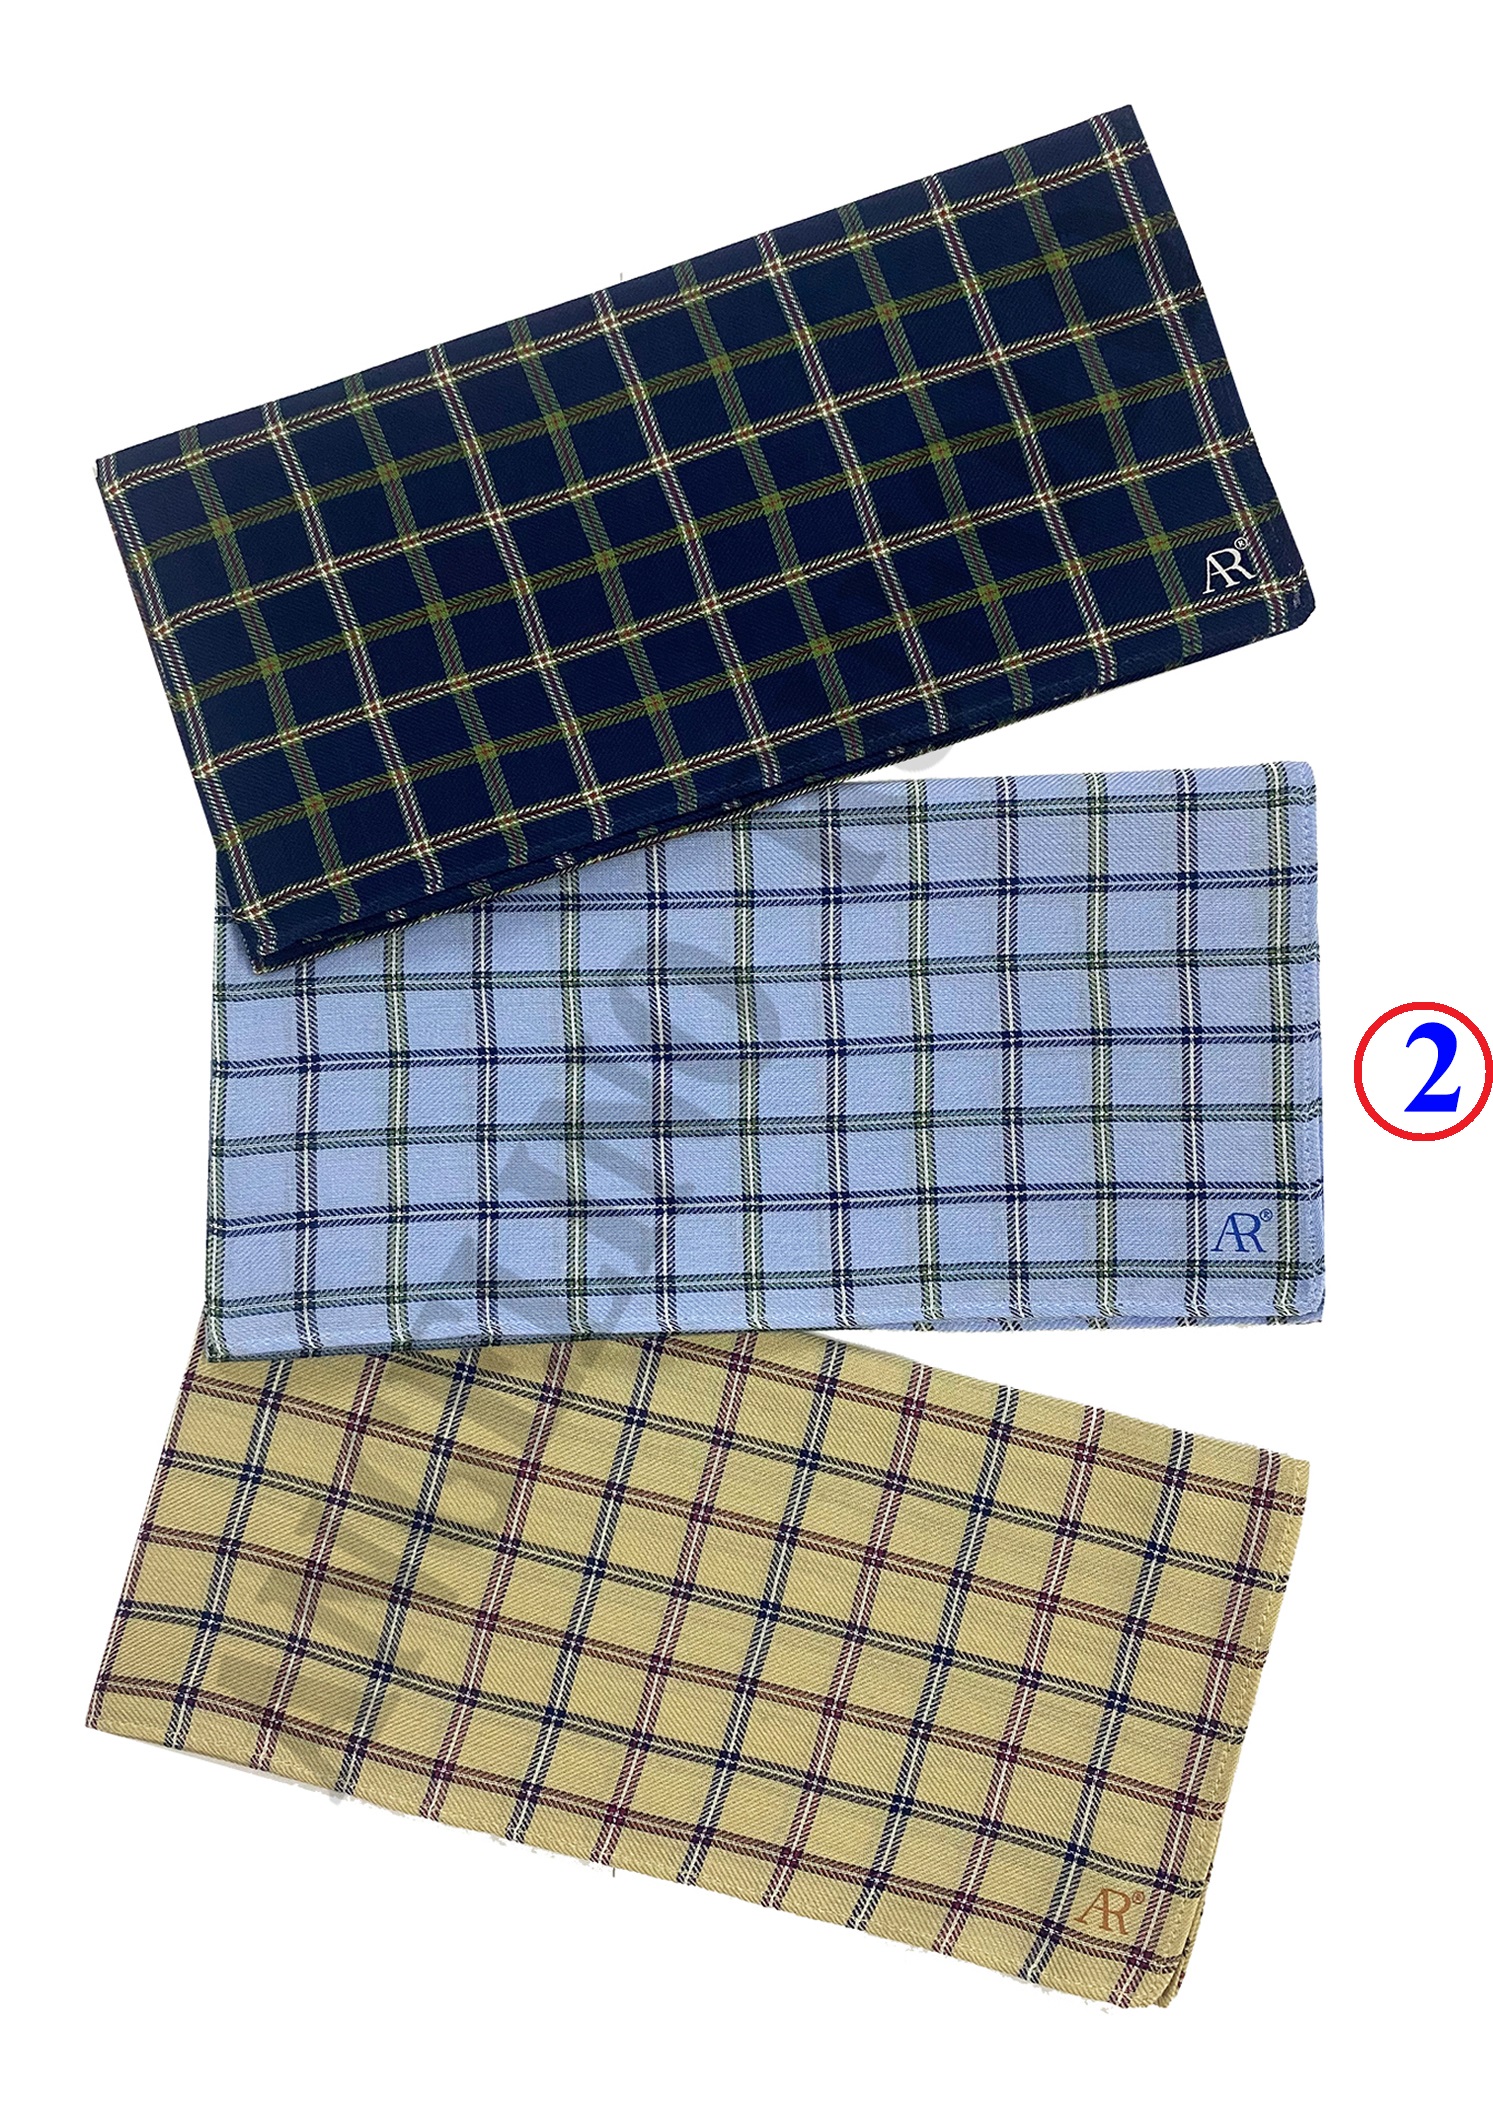 ANGELINO RUFOLO Handkerchief (ผ้าเช็ดหน้า) ผ้า 100% COTTON คุณภาพเยี่ยม ดีไซน์ Scot สีกรมท่า/สีฟ้า/สีกากี